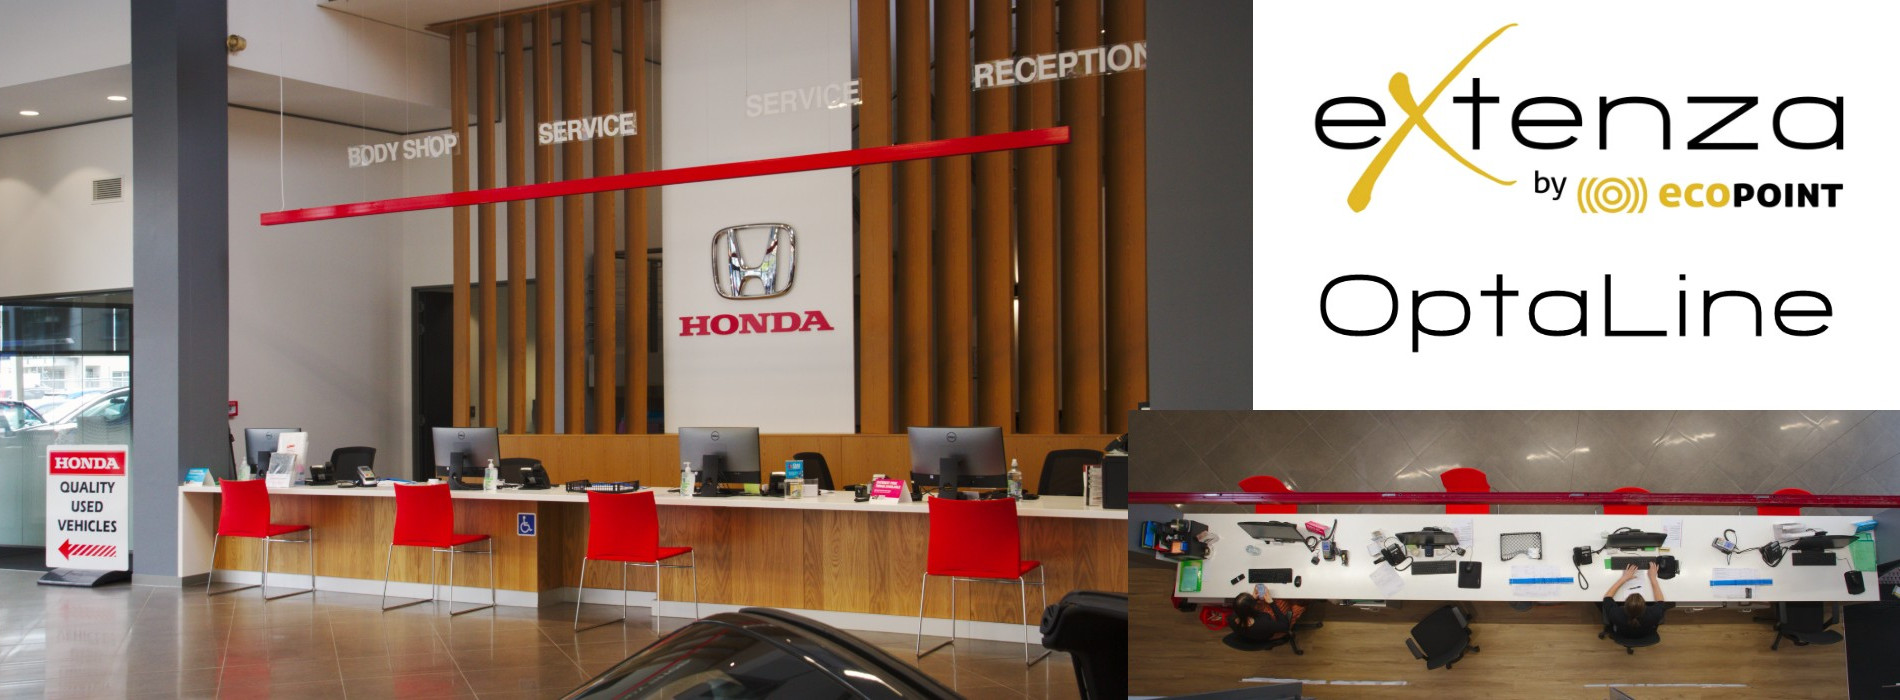 Honda Reception OptaLine Header v2